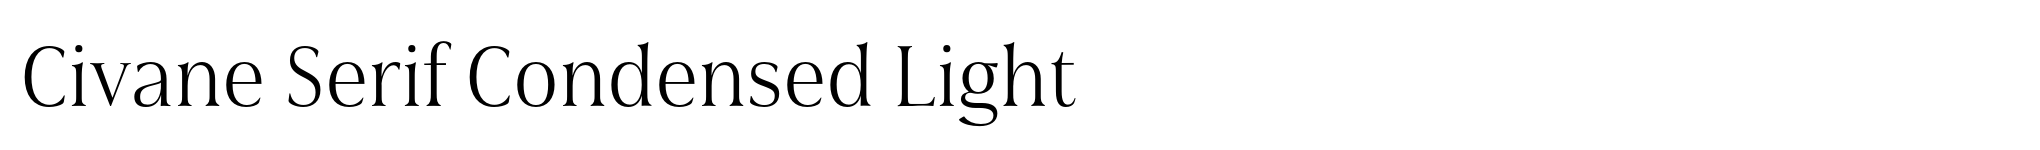 Civane Serif Condensed Light image